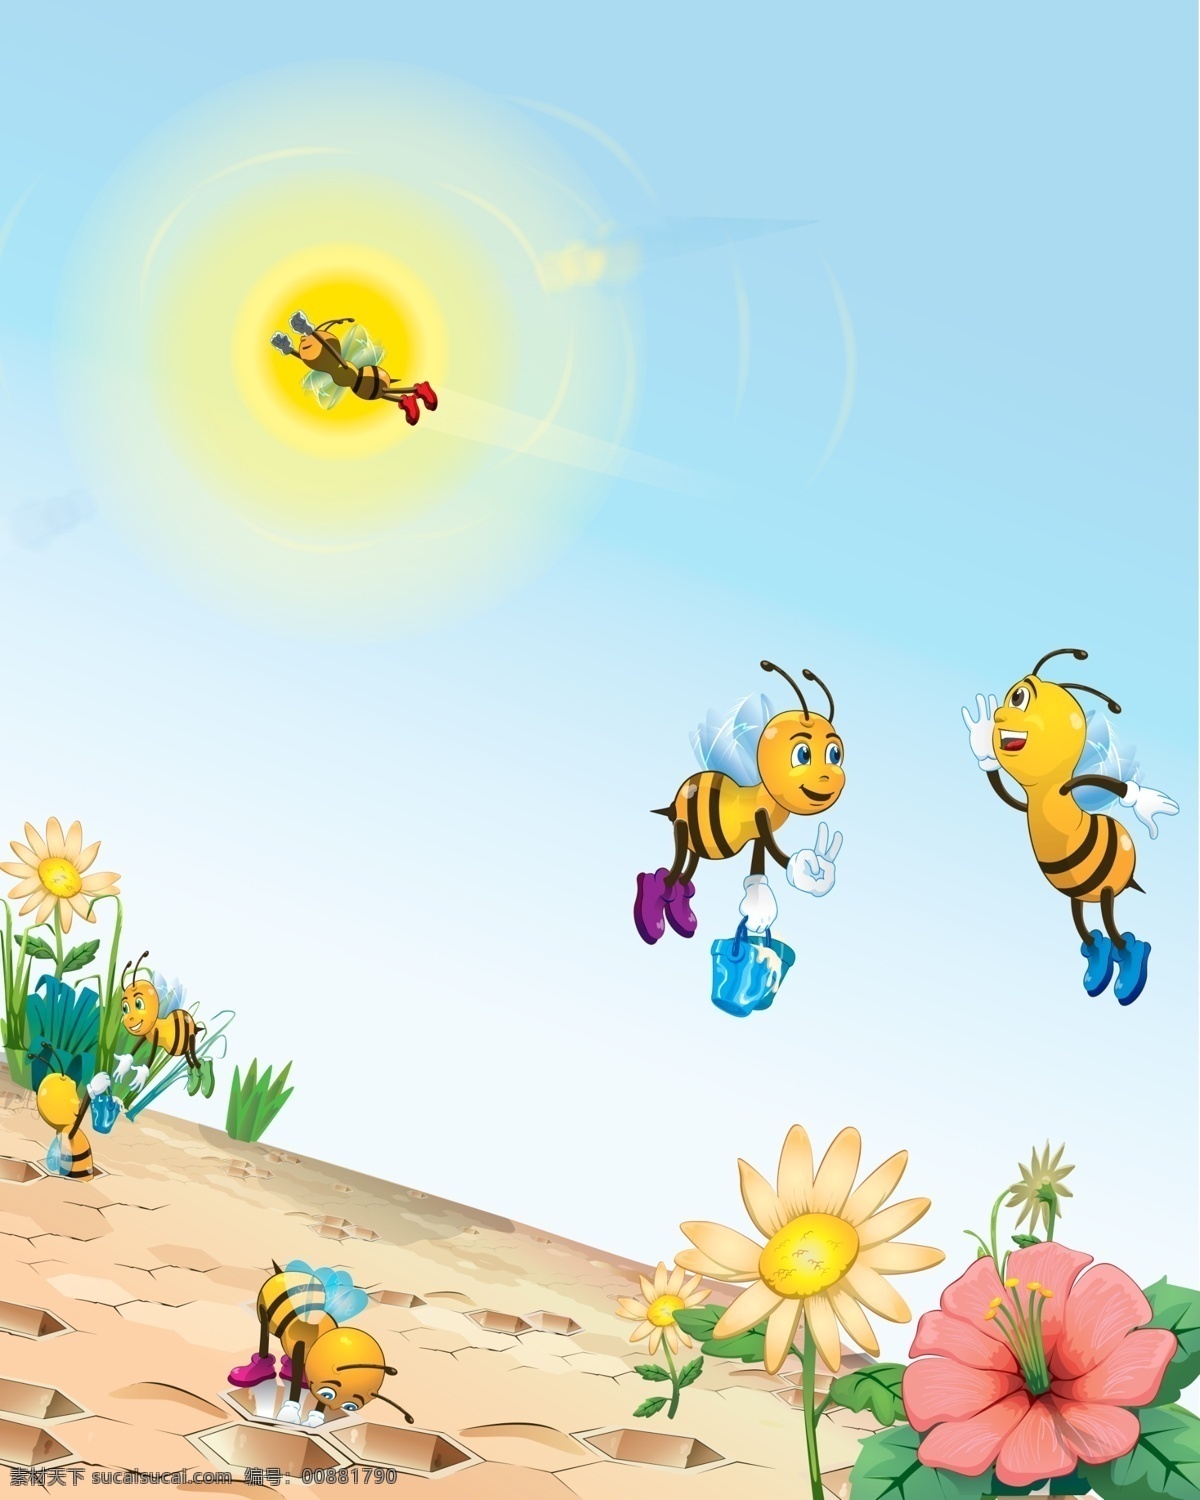 风景 蜂窝 广告设计模板 花 卡通 卡通花 太阳花 小蜜蜂 两只小蜜蜂 蜜蜂采花 蜜蜂酿蜜 移门 移门图案 源文件 装饰素材